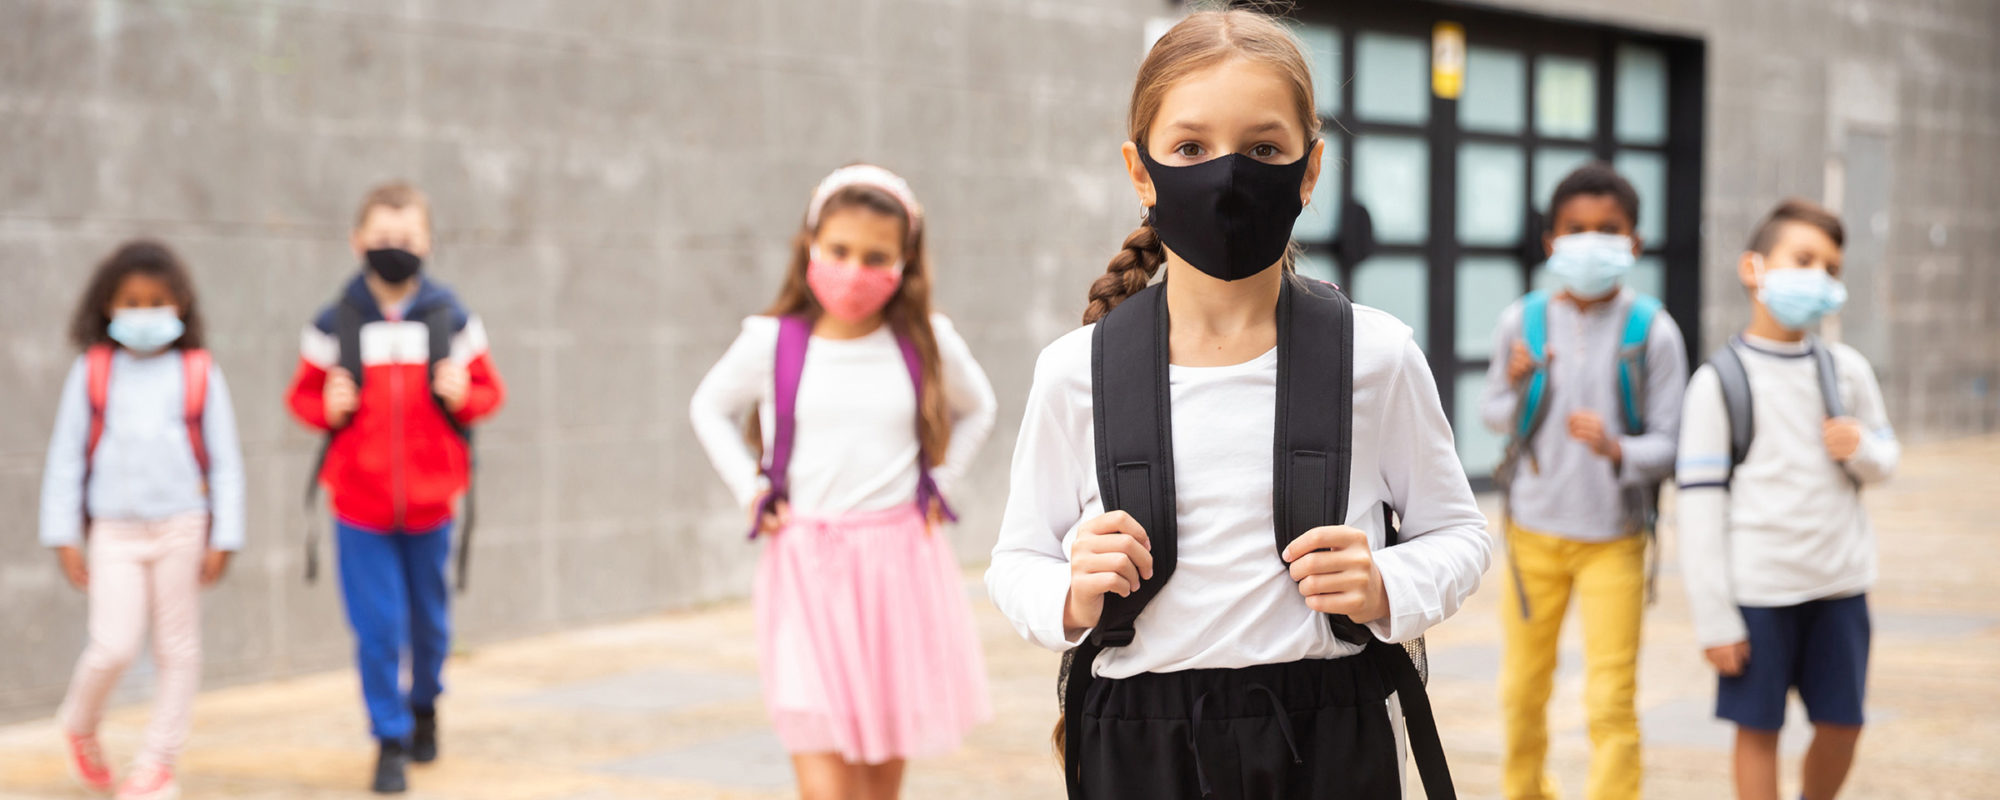 Kinder gehen mit Maske zur Schule, um sich gegen eine Durchseuchung mit dem Coronavirus zu schützen